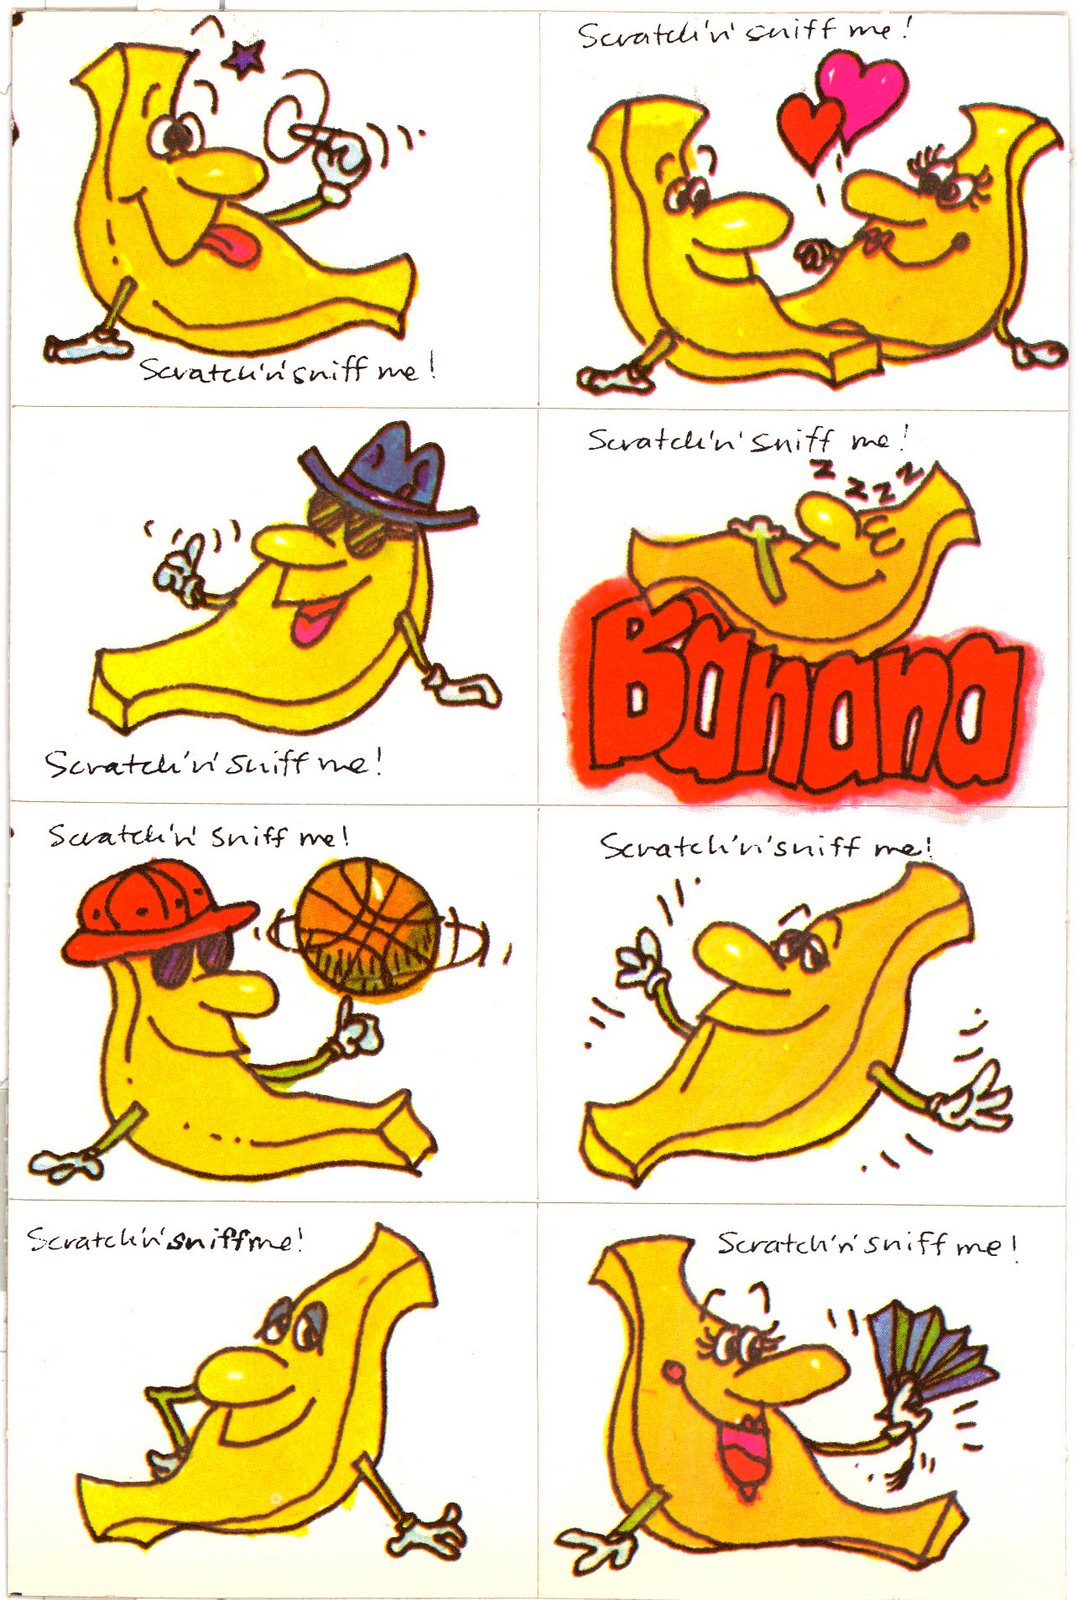 [bananasniff.jpg]